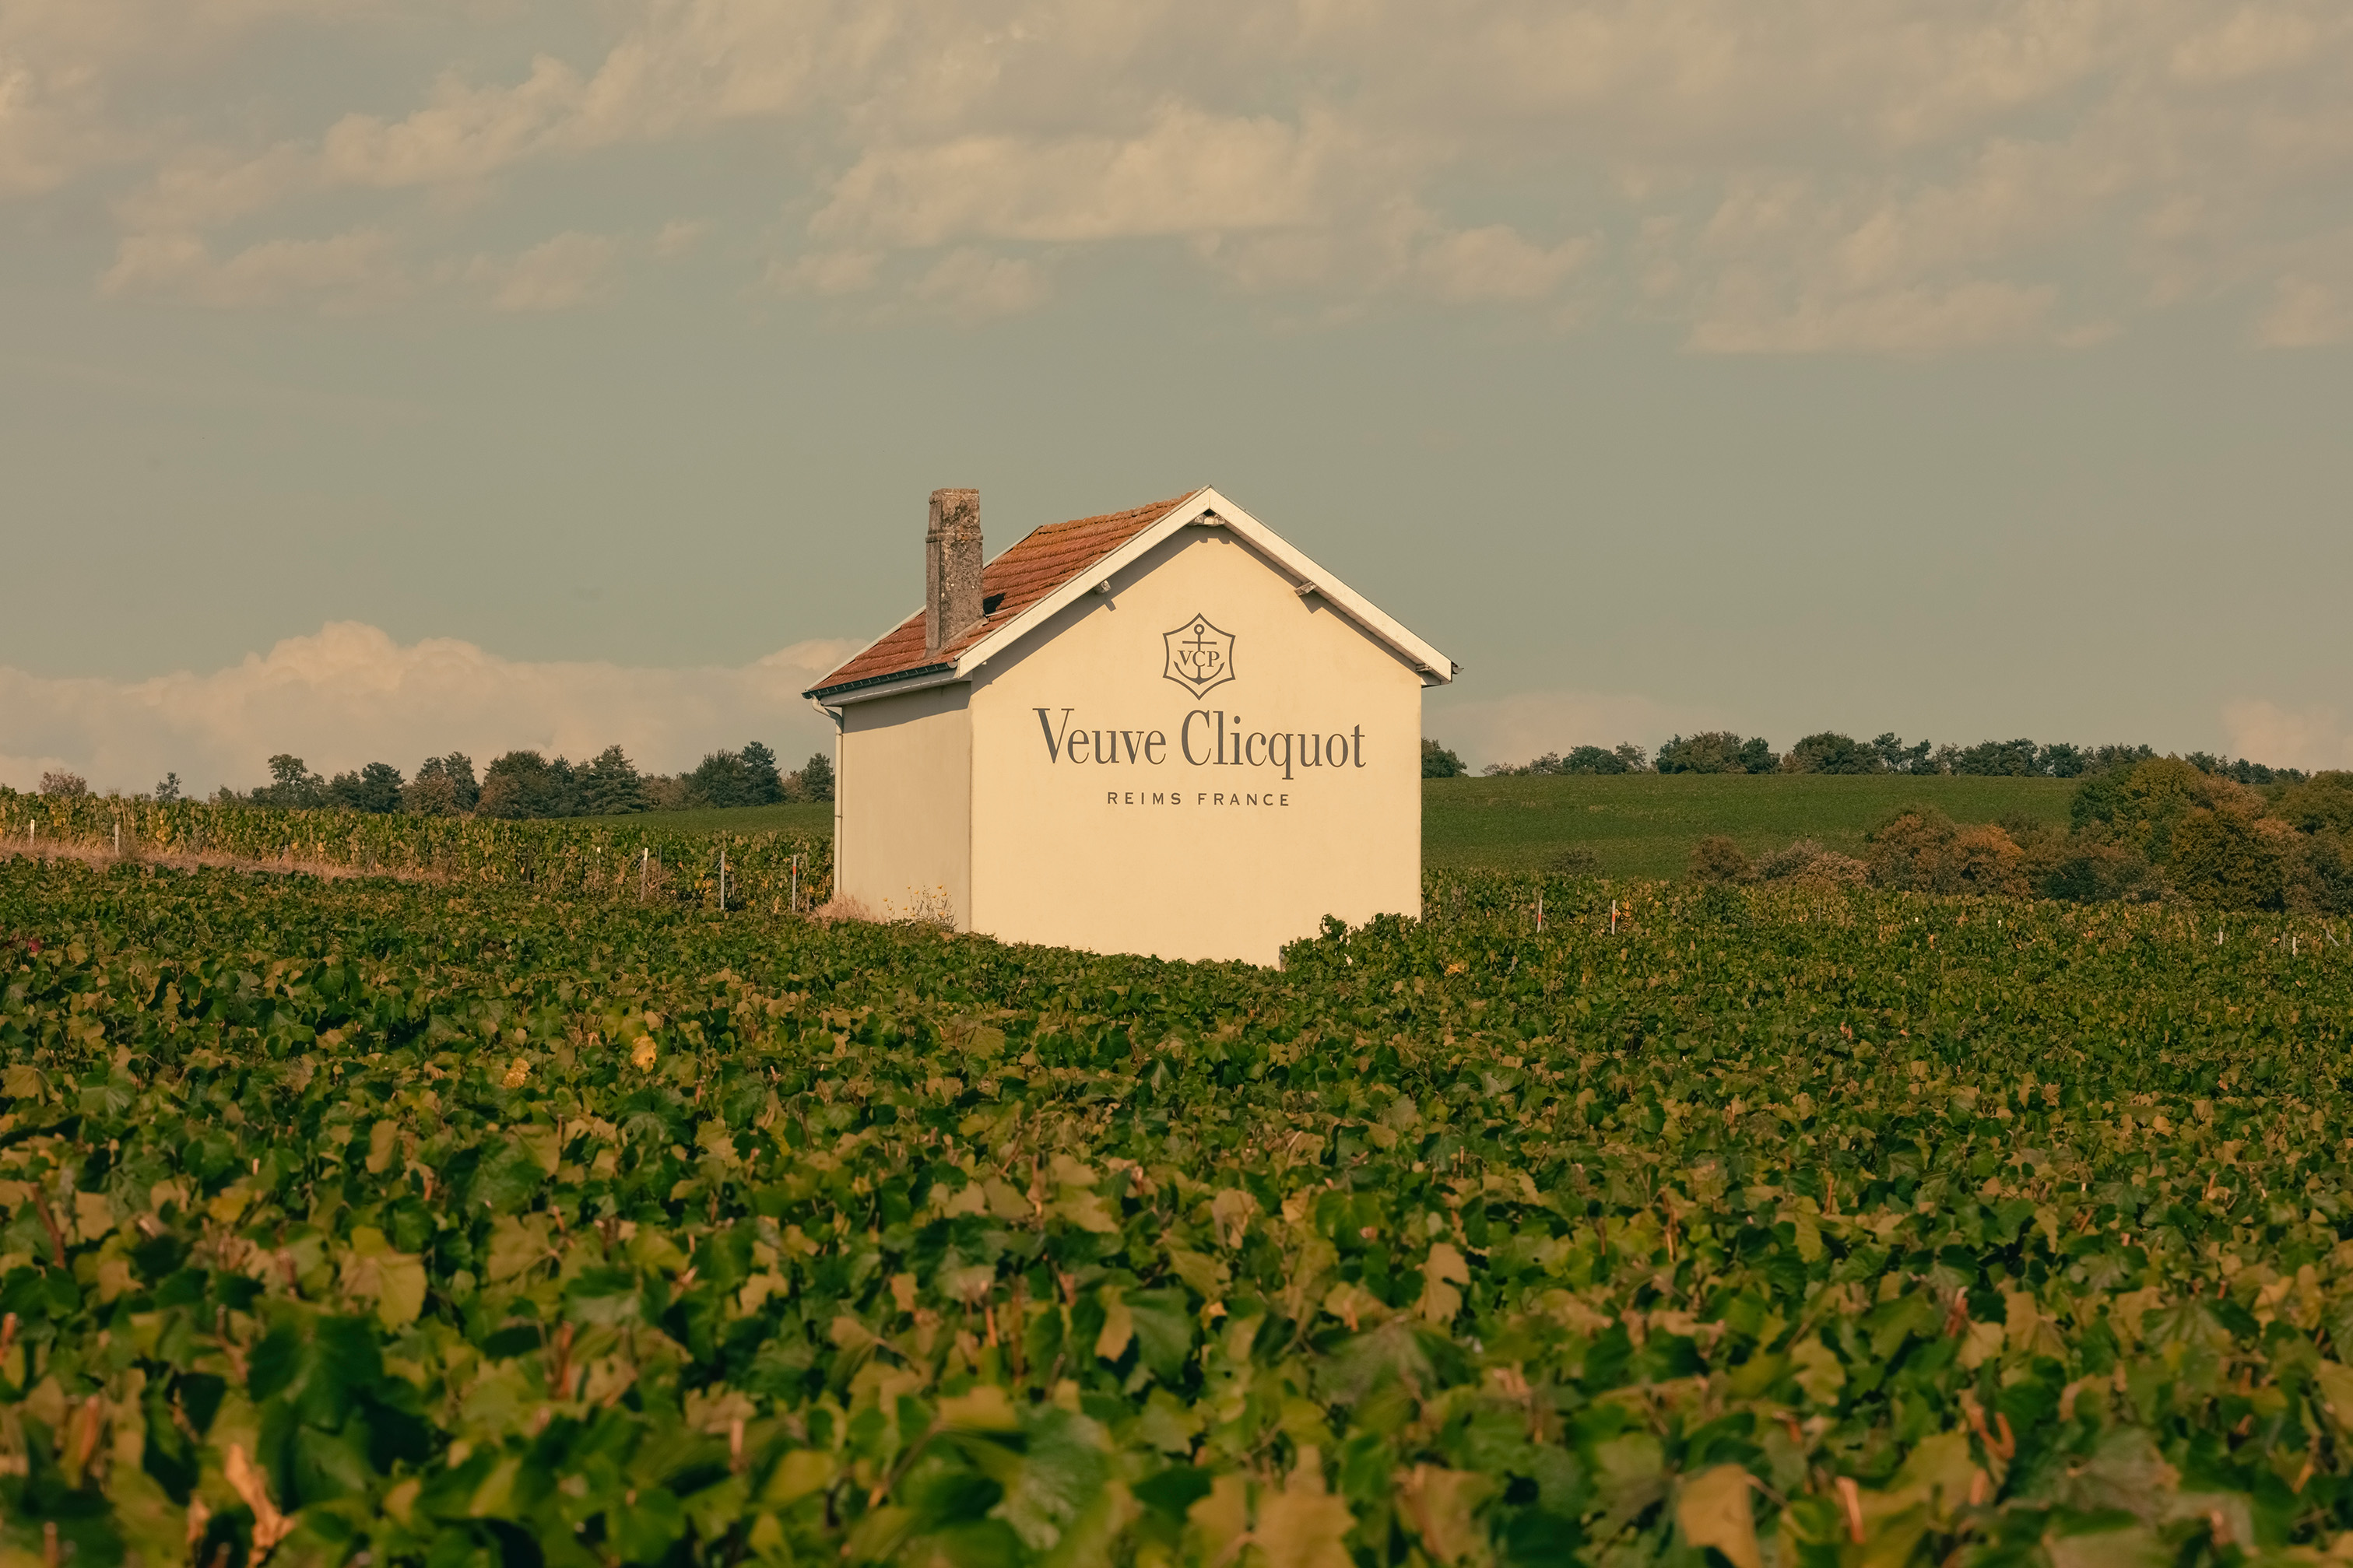 ein Haus in Mitten der Weingärten mit dem Logo bedruckt von Veuve Clicquot